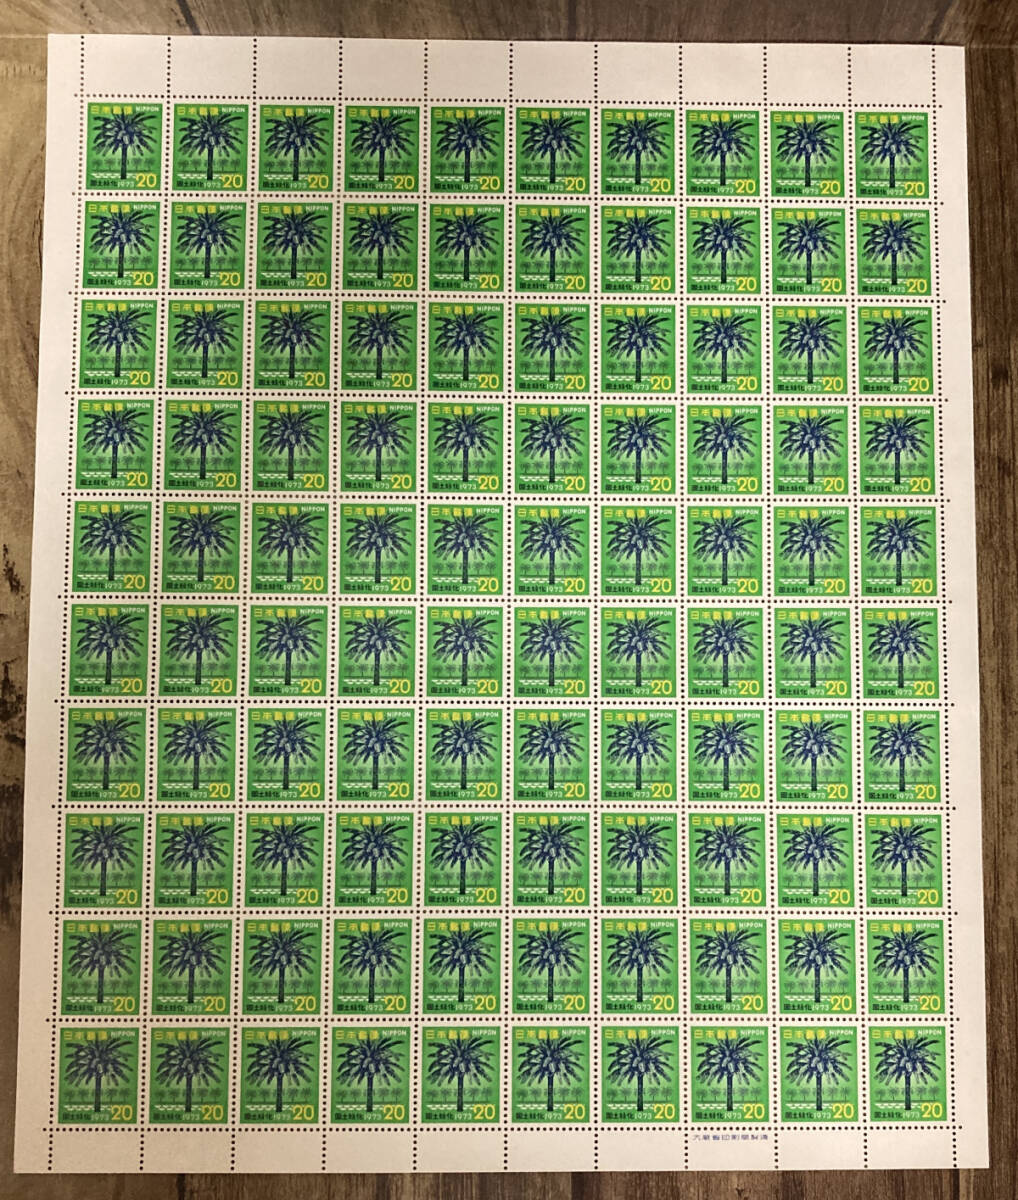 【未使用切手シート】1973年 (S48) 国土緑化シリーズ フェニックス 未使用20円切手100枚 1シートの画像1